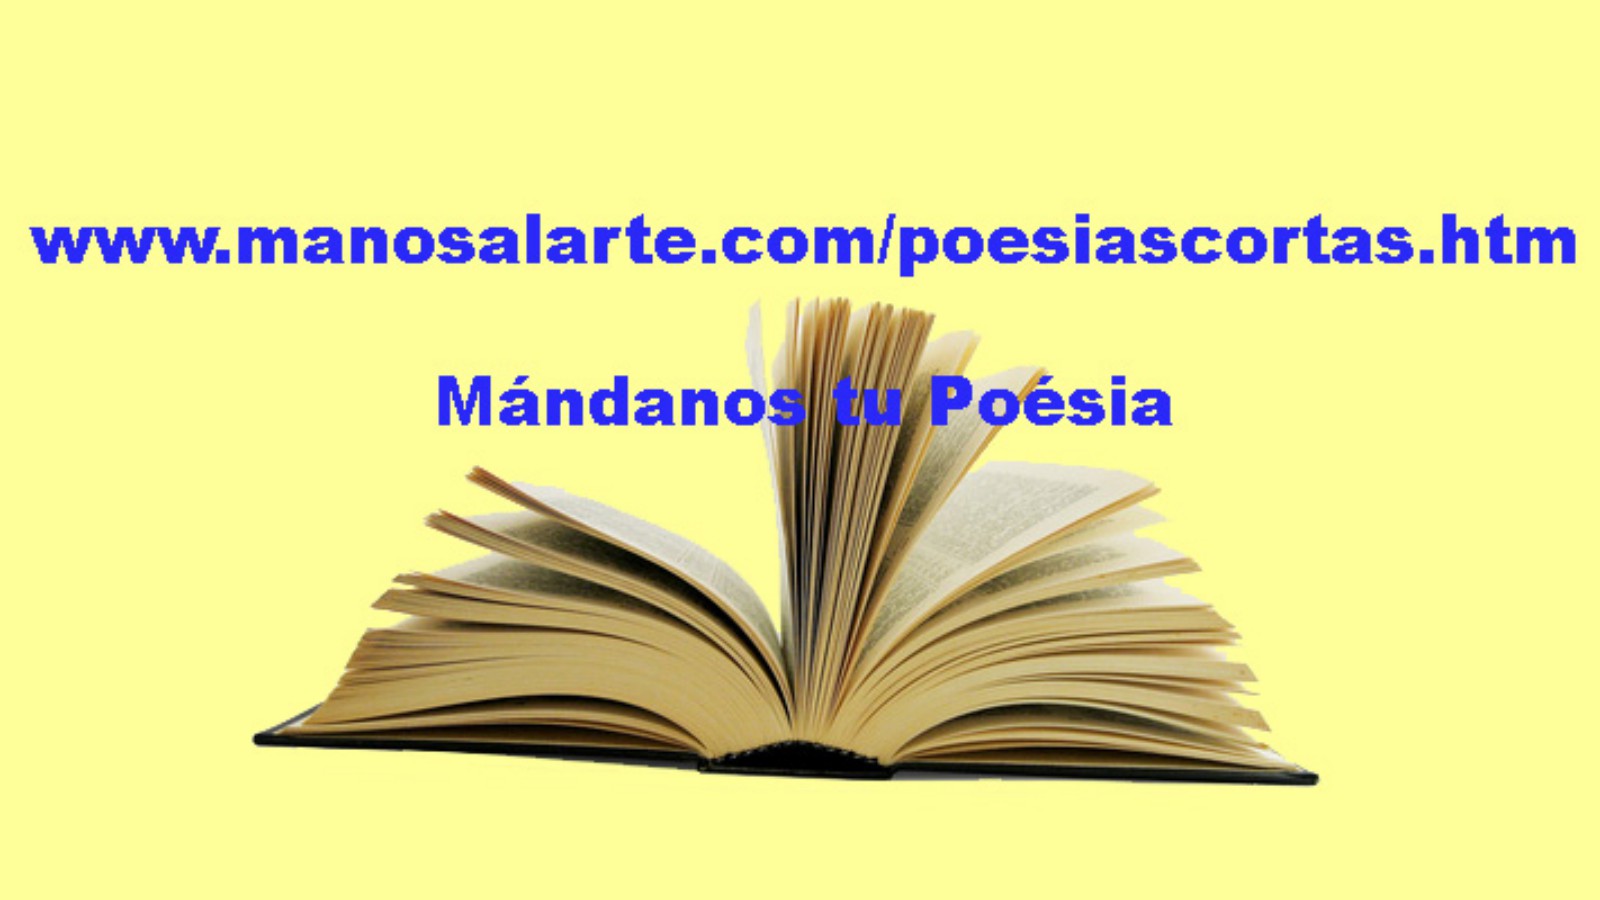 info@manosalarte.com